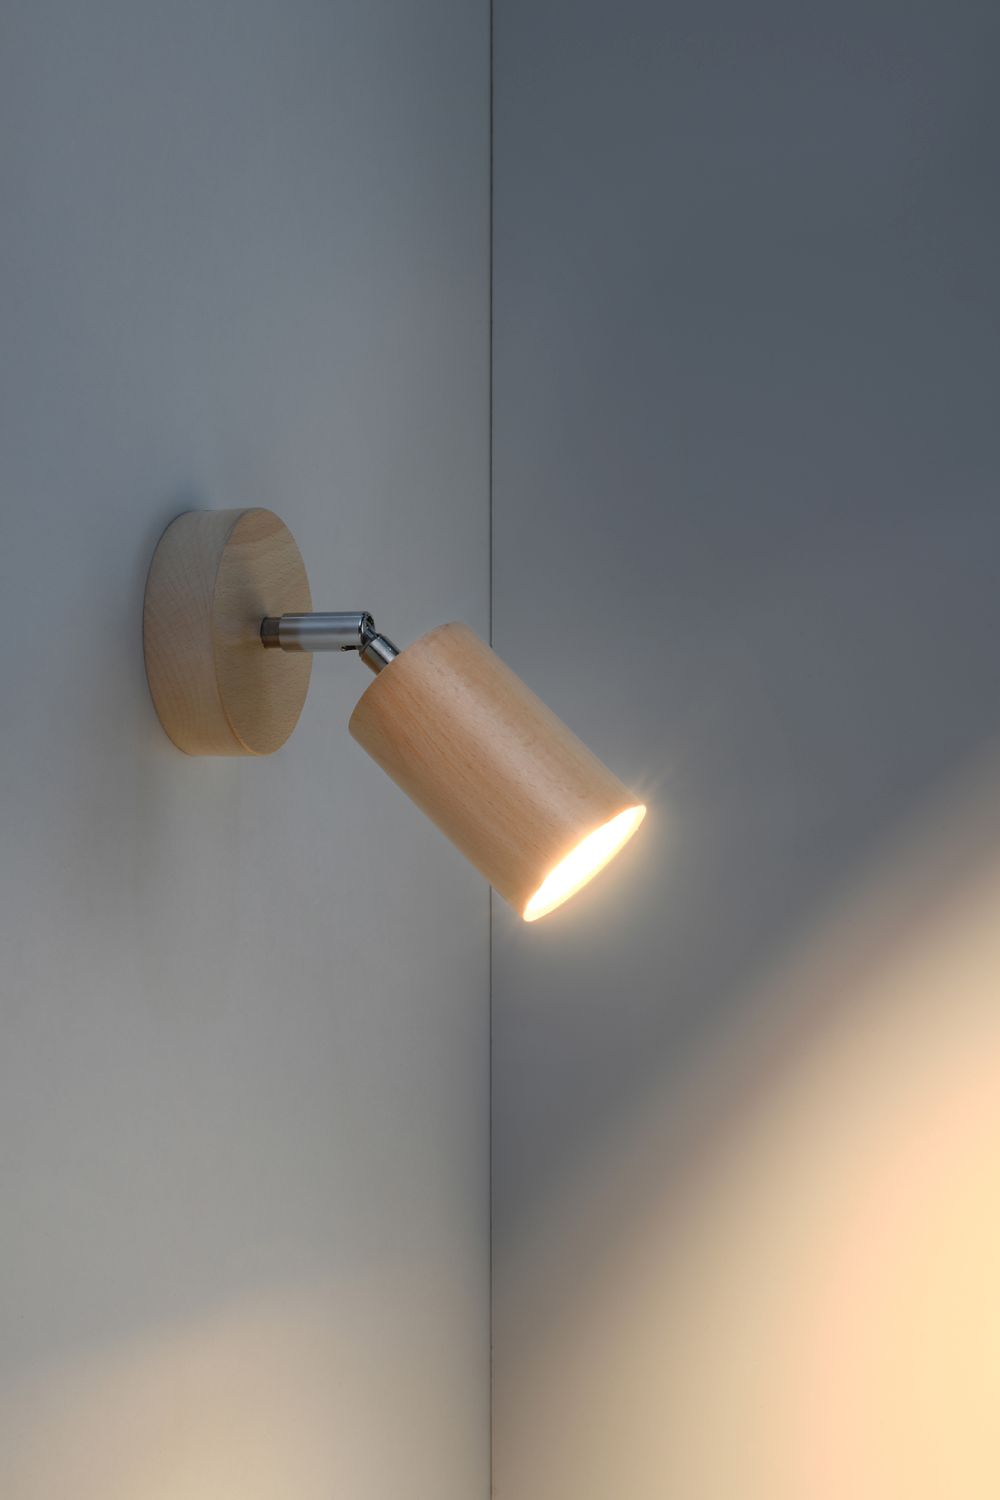 Spot Lampe Holz rund GU10 Modern wohnlich VESUVIA